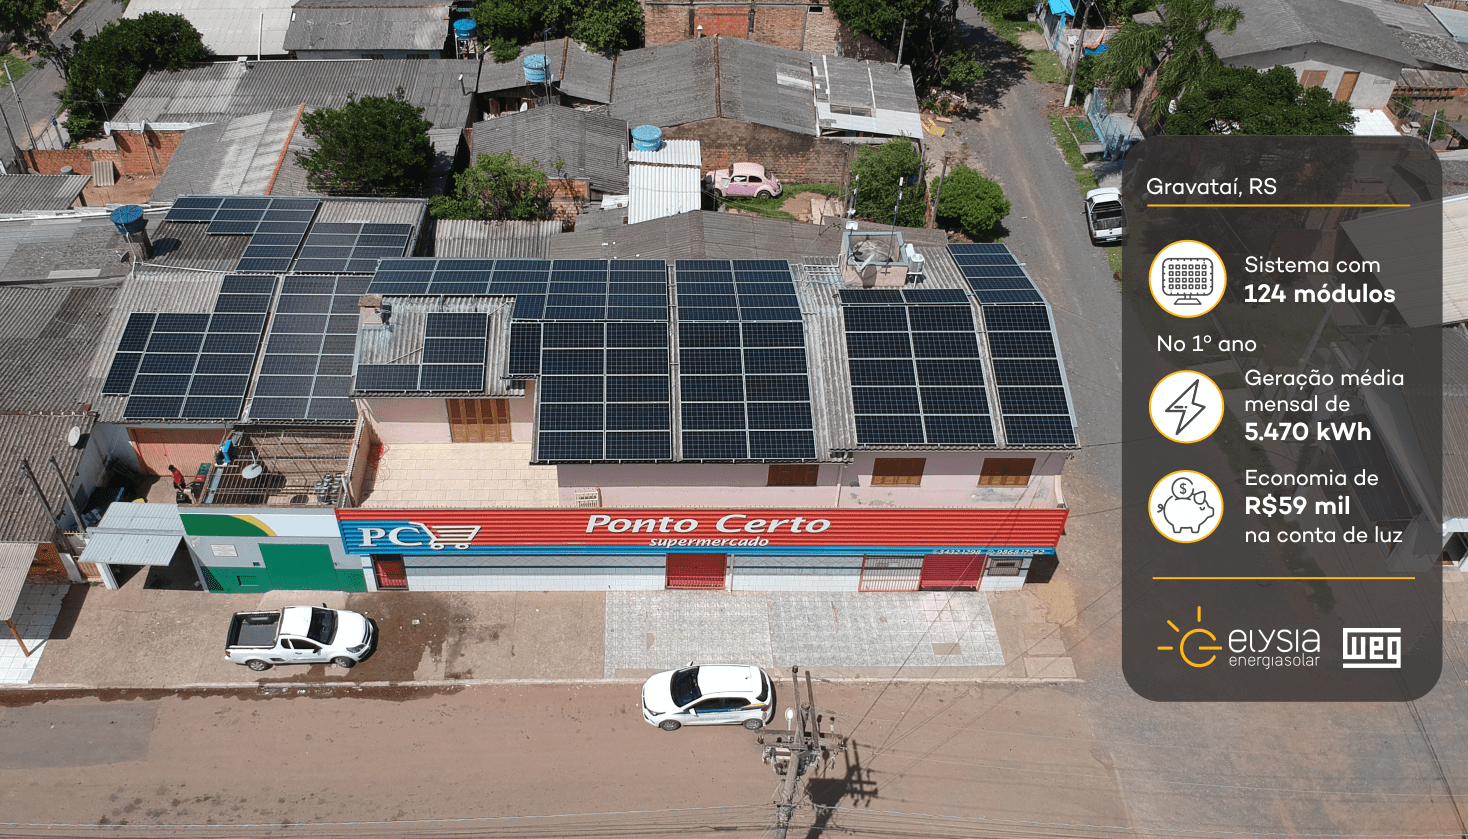 Reputação elevada - Elysia energia solar comercial Rio Grande do Sul